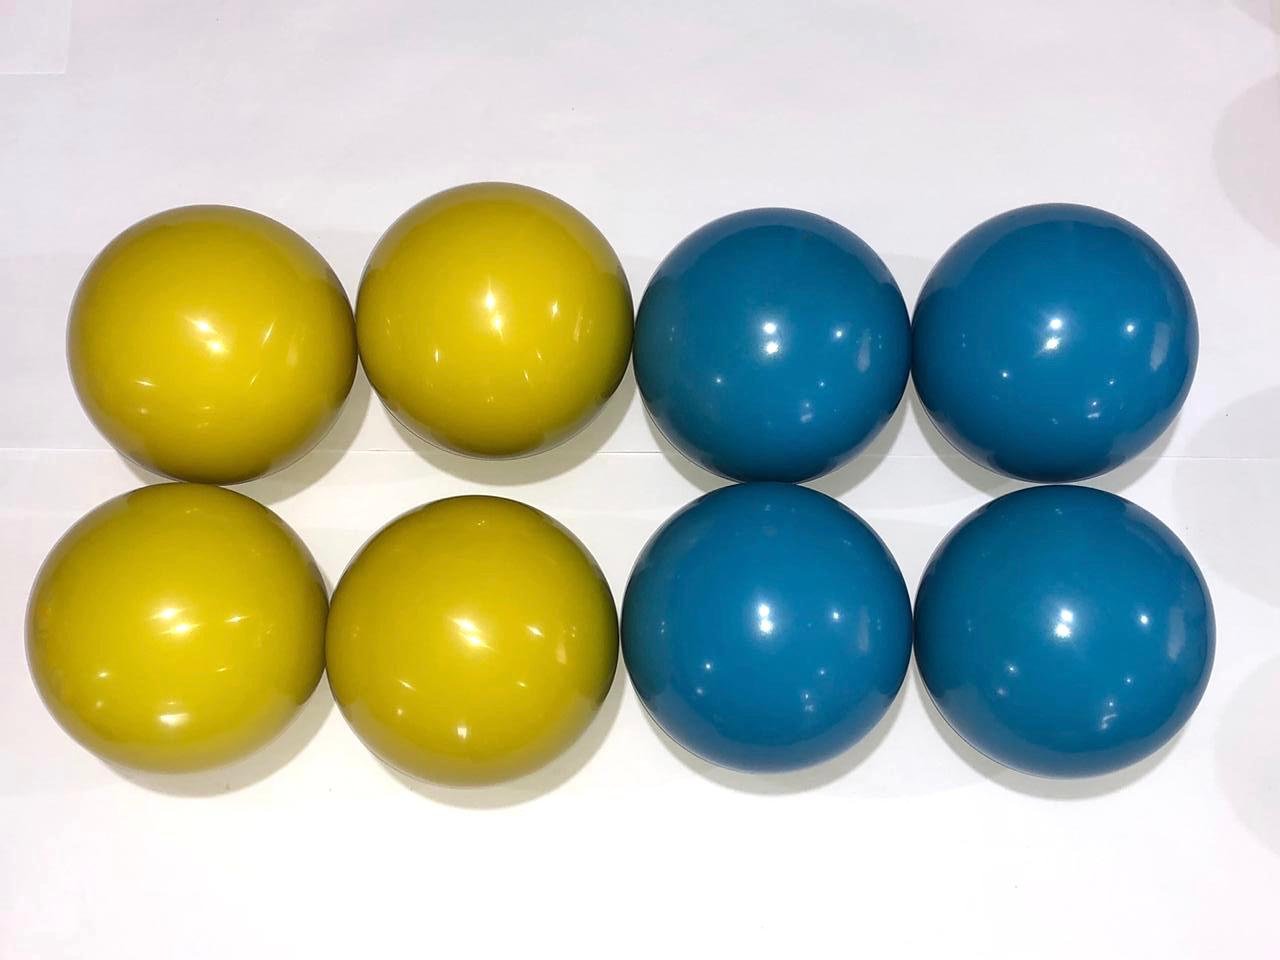 Jogo de bolas de bocha mundial 920 a 950g caixa com 6 bolas